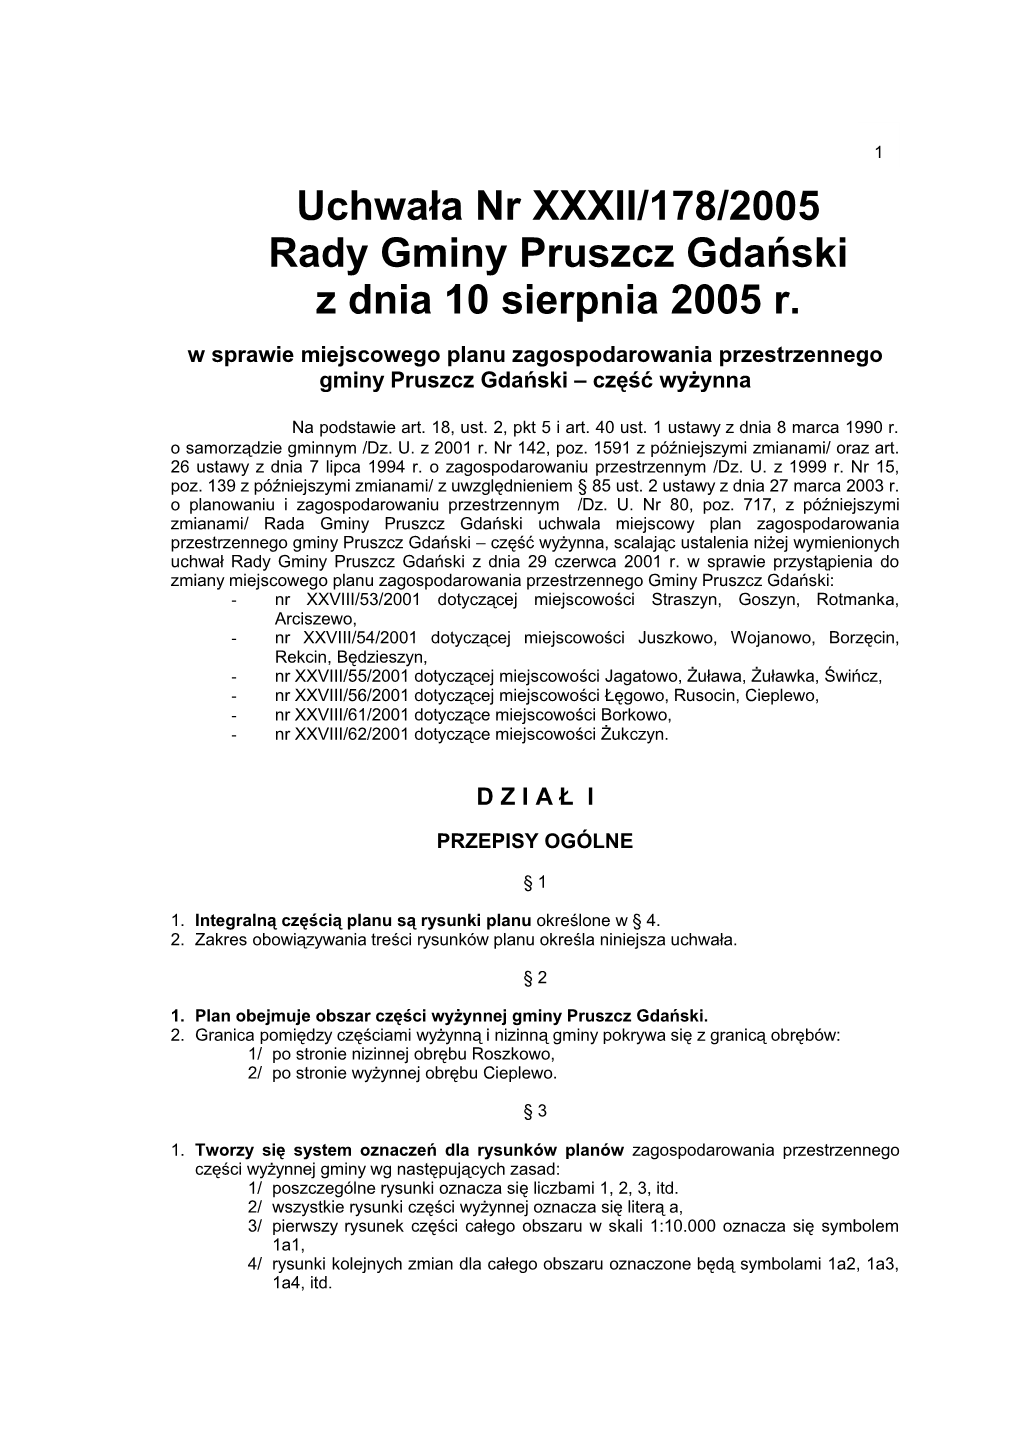 Uchwała Nr XXXII/178/2005 Rady Gminy Pruszcz Gdański Z Dnia 10 Sierpnia 2005 R